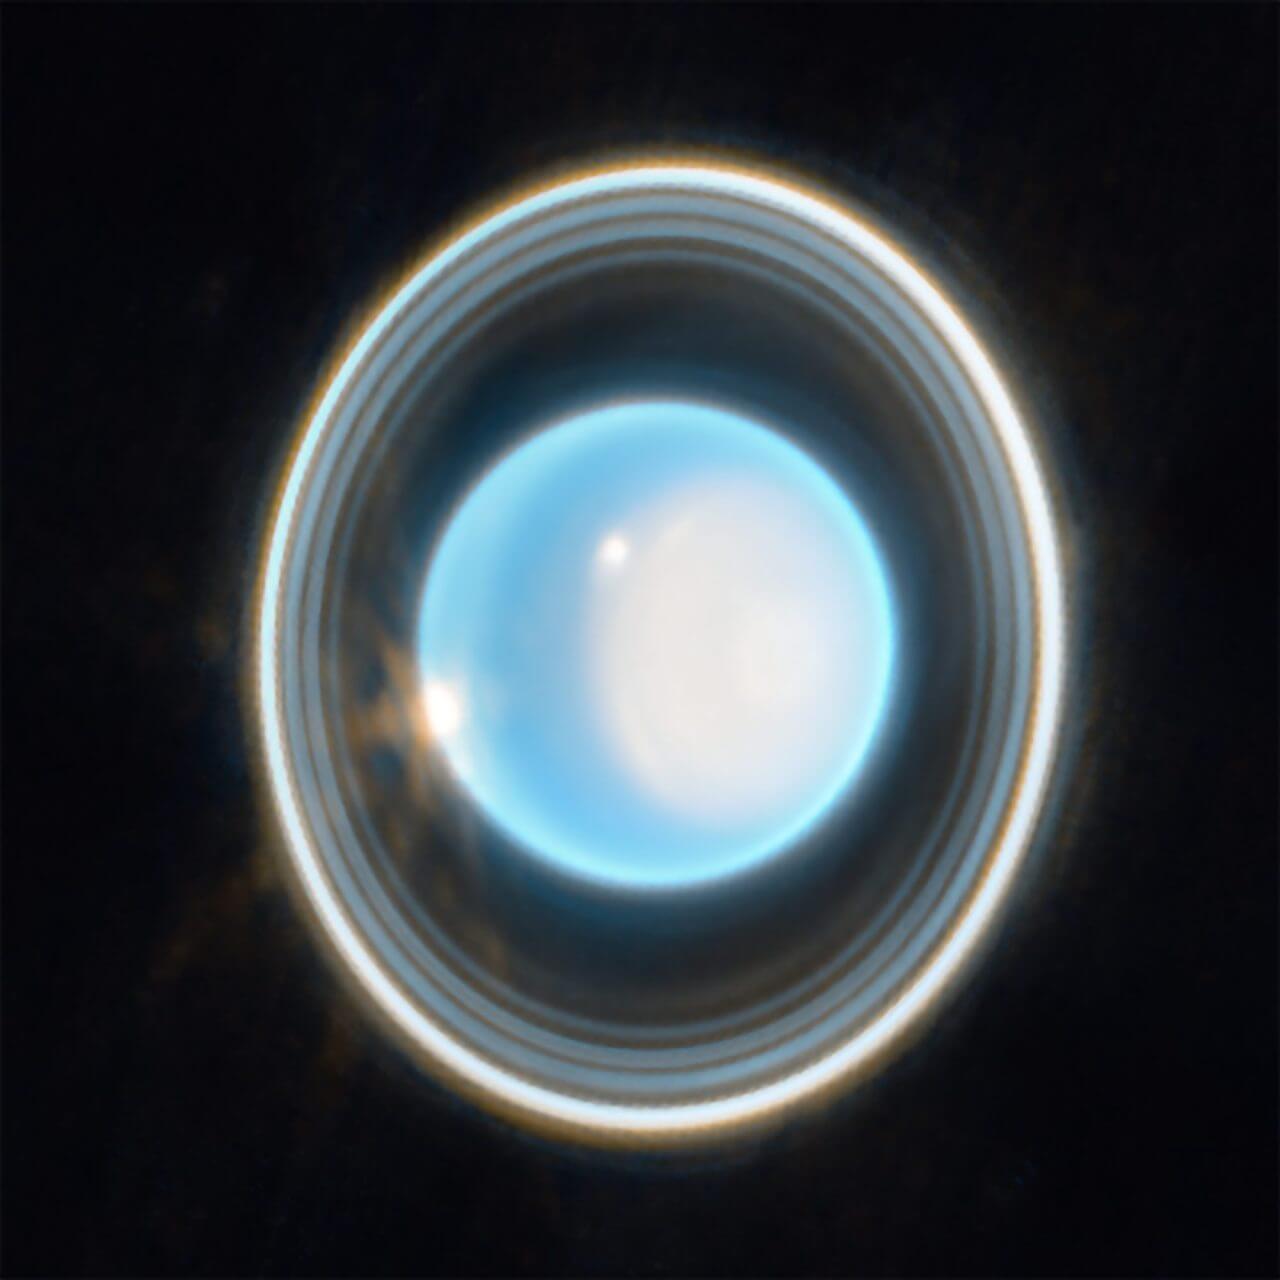 ウェッブ宇宙望遠鏡が捉えた「天王星」【今日の宇宙画像】